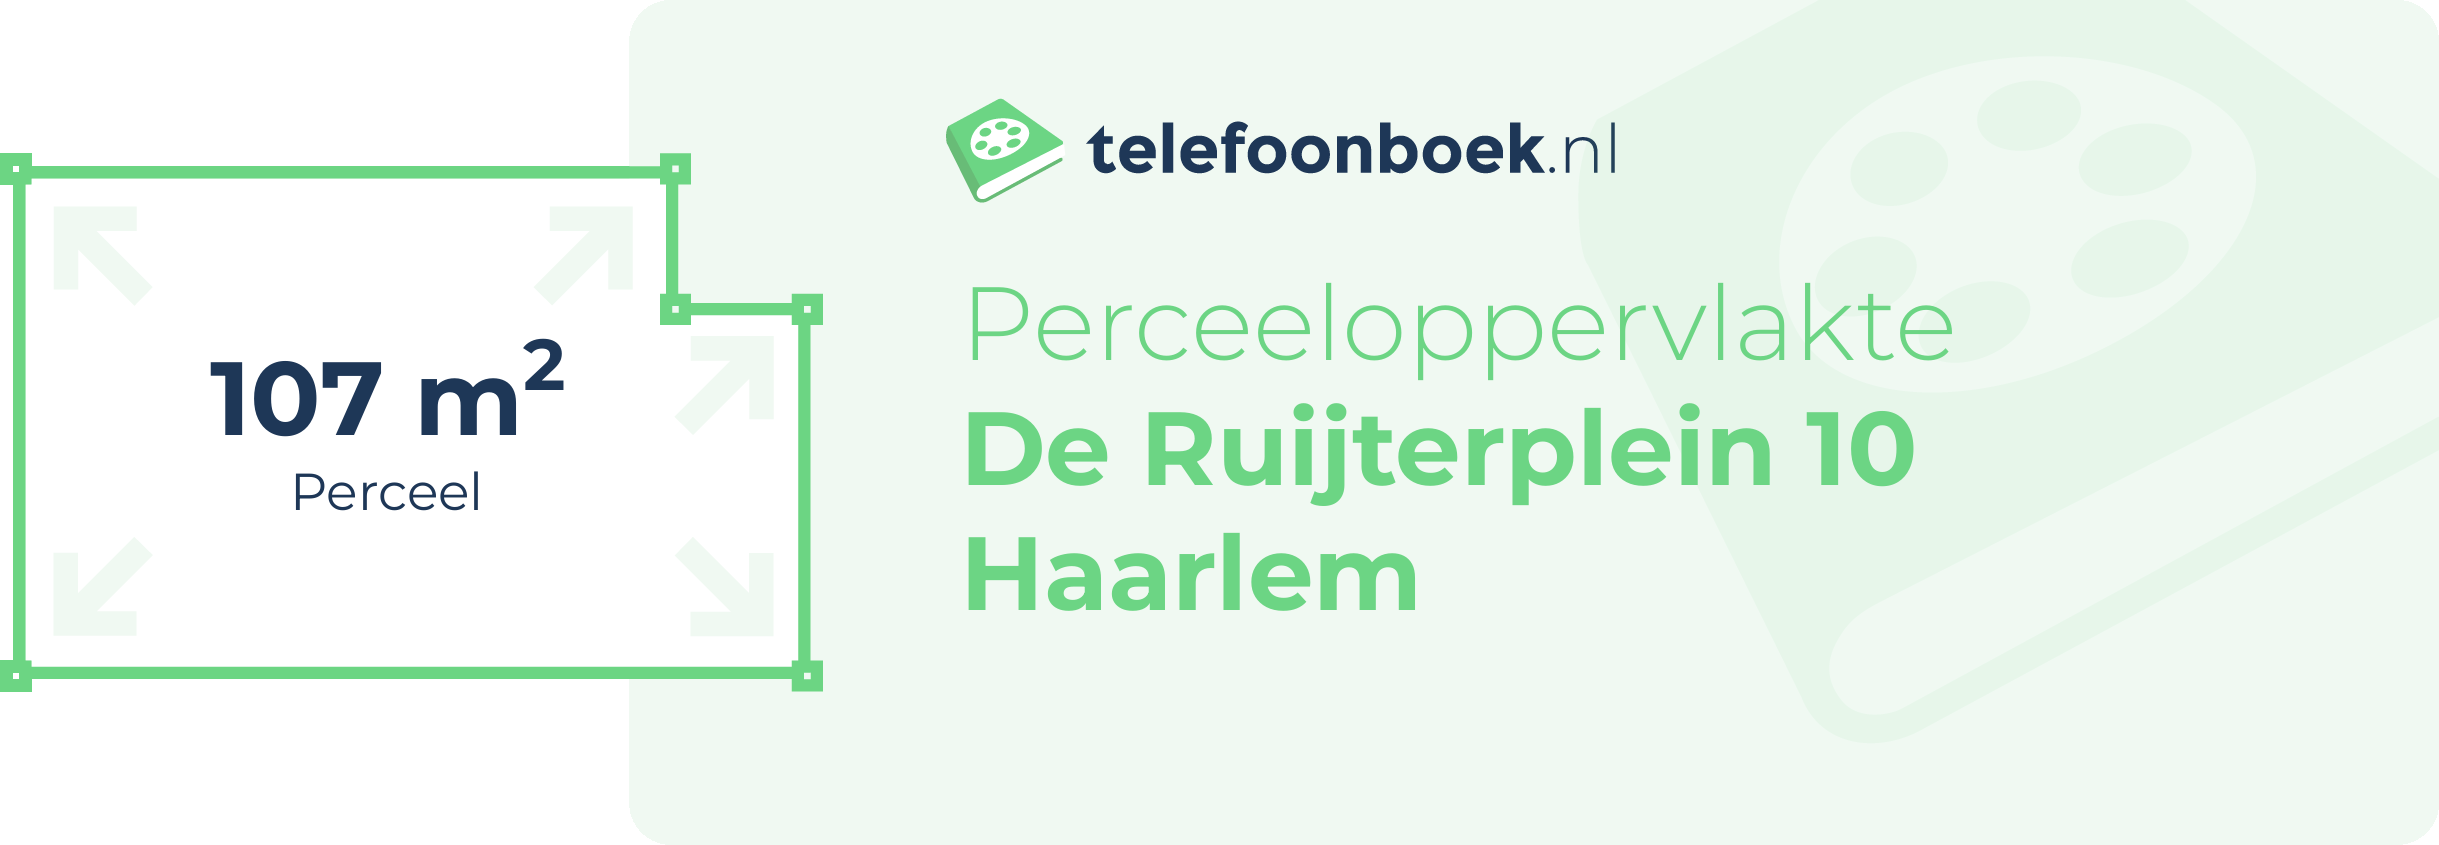 Perceeloppervlakte De Ruijterplein 10 Haarlem